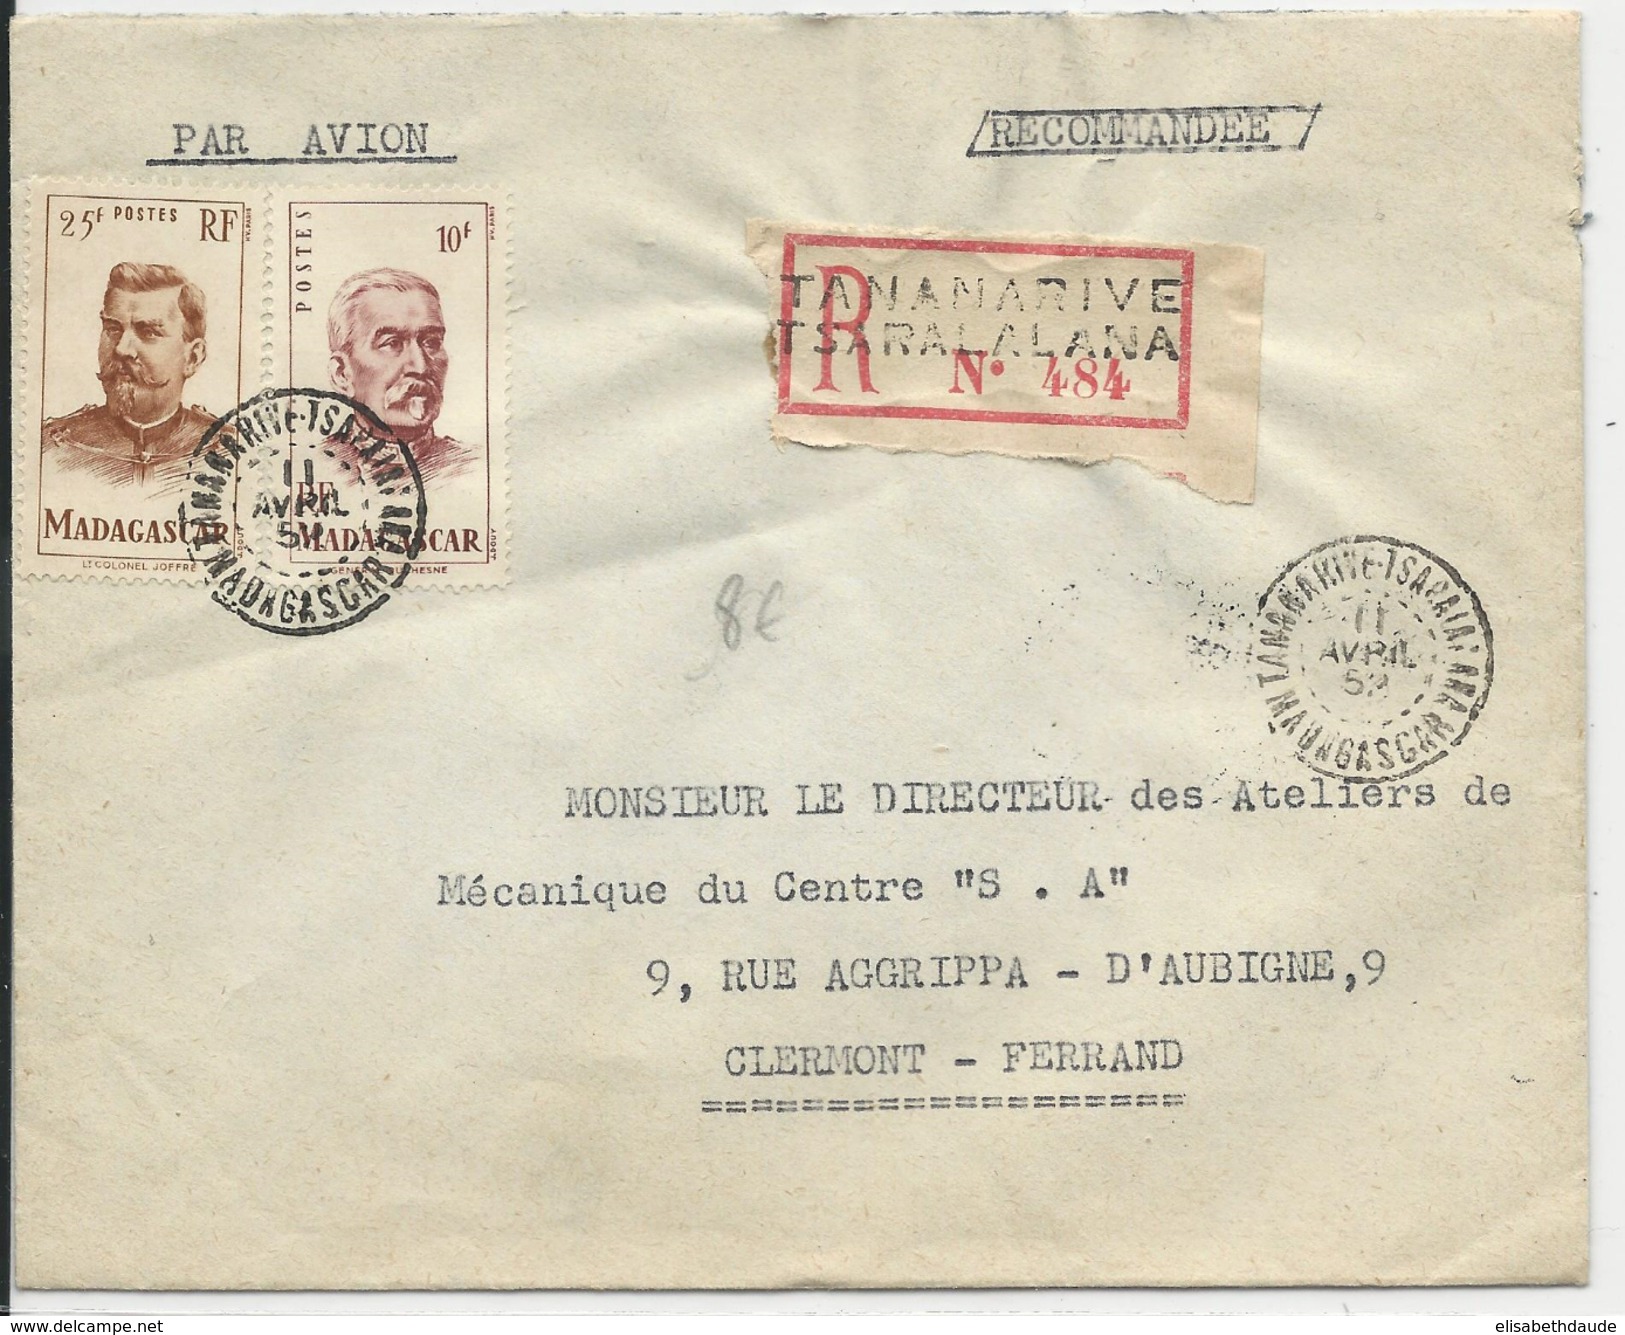 MADAGASCAR - 1952 - ENVELOPPE Par AVION RECOMMANDEE  De TANANARIVE TSARALALANA Pour CLERMONT - Lettres & Documents